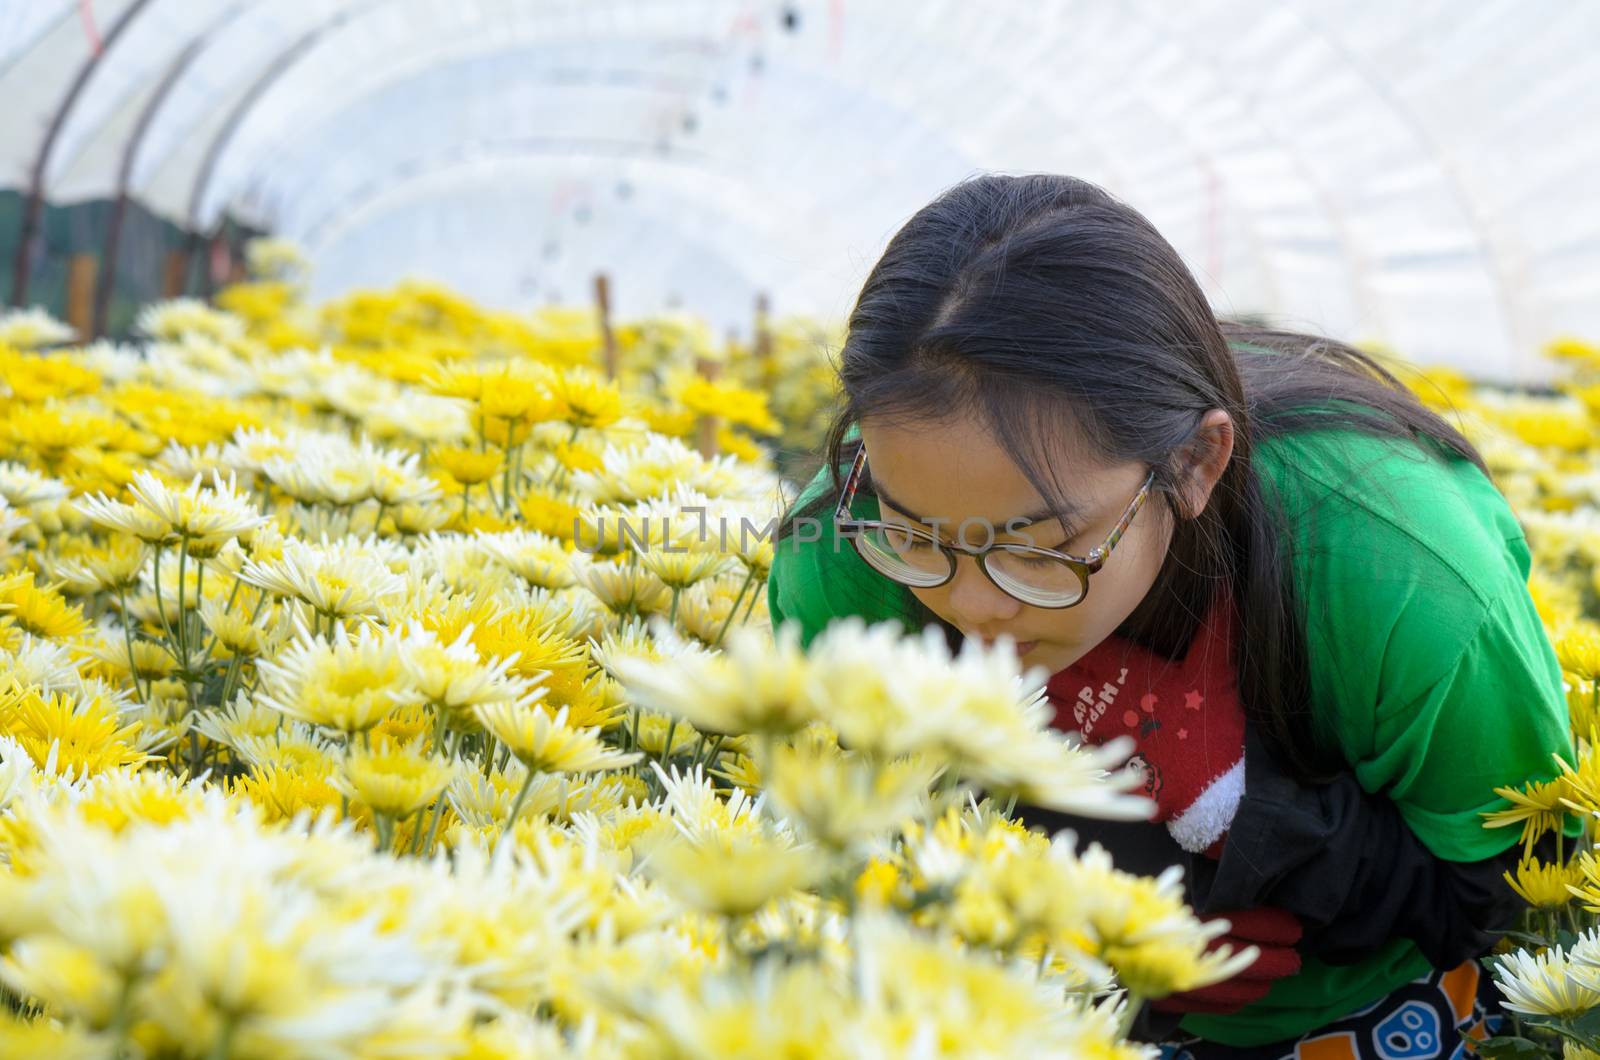 Girls enjoy the smell of Chrysanthemum flowers garden in the morning.